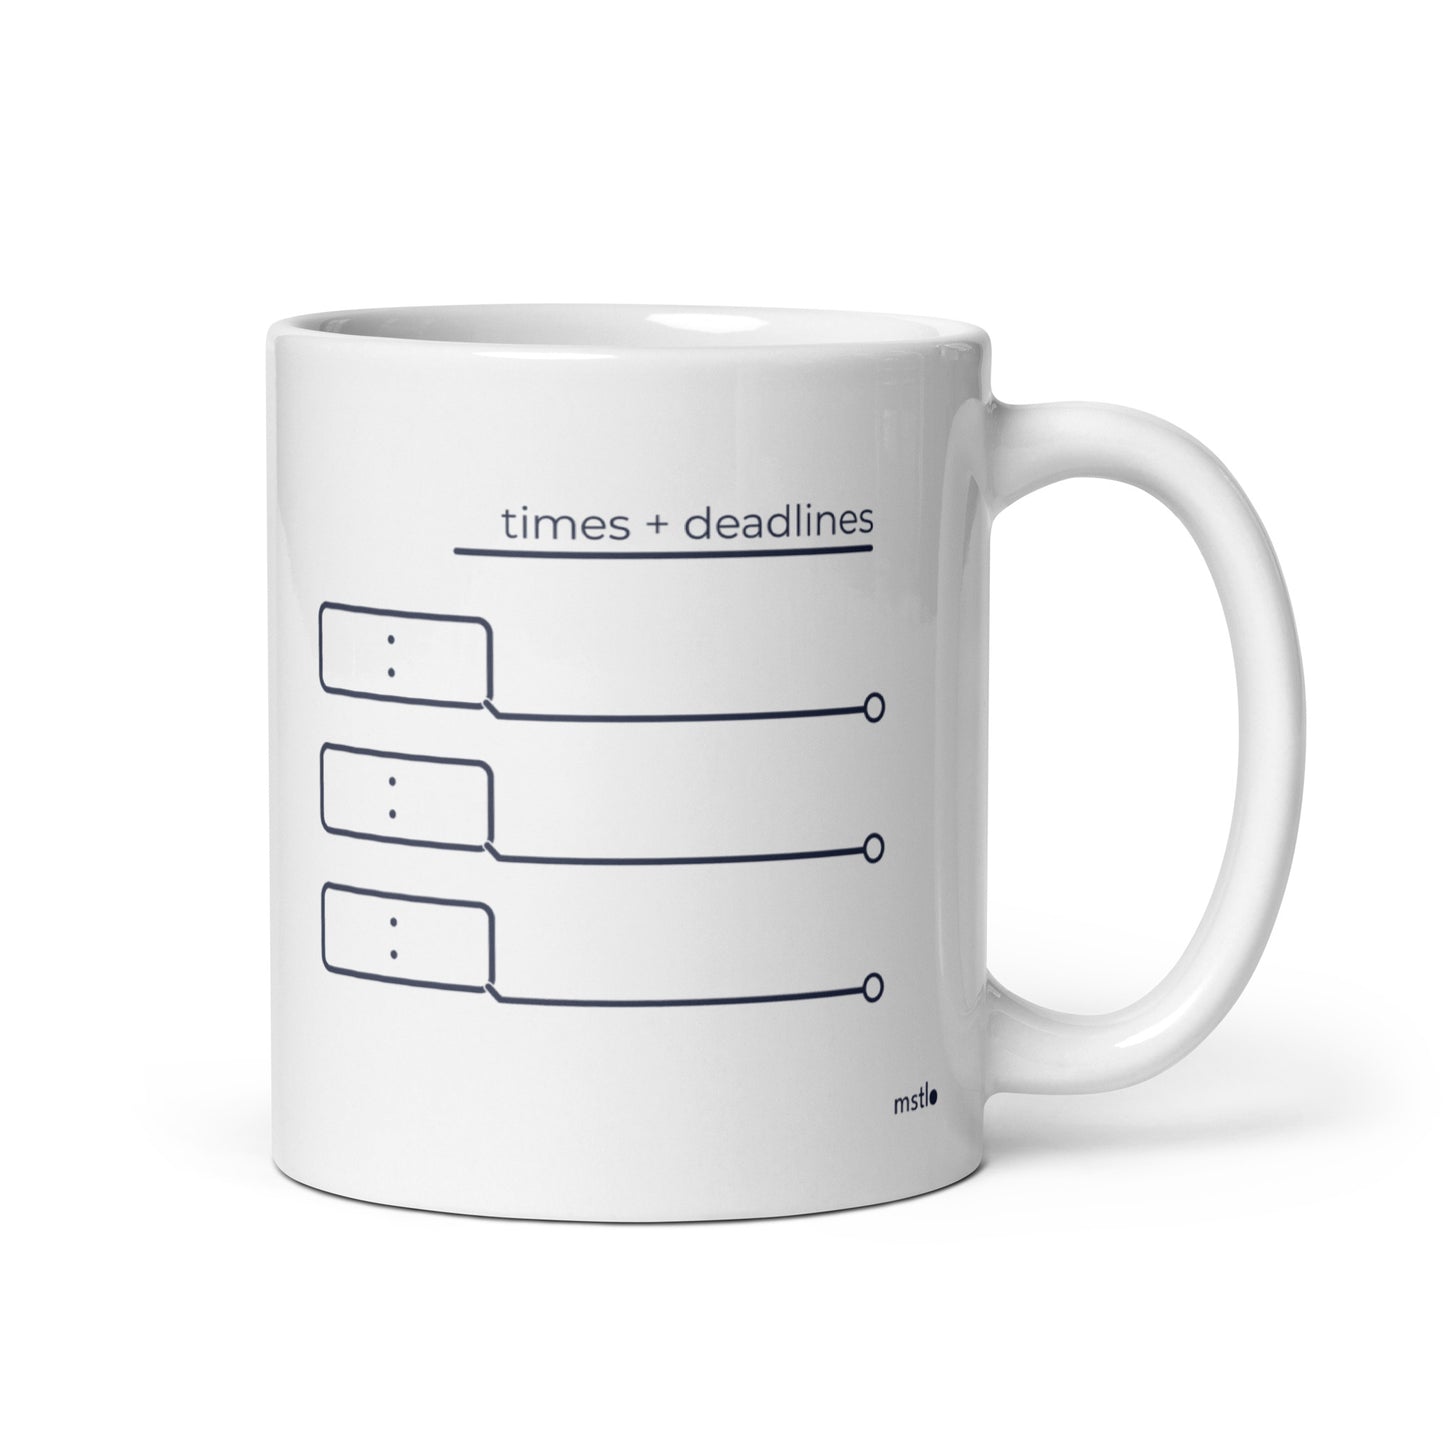 Daily Priorities mug